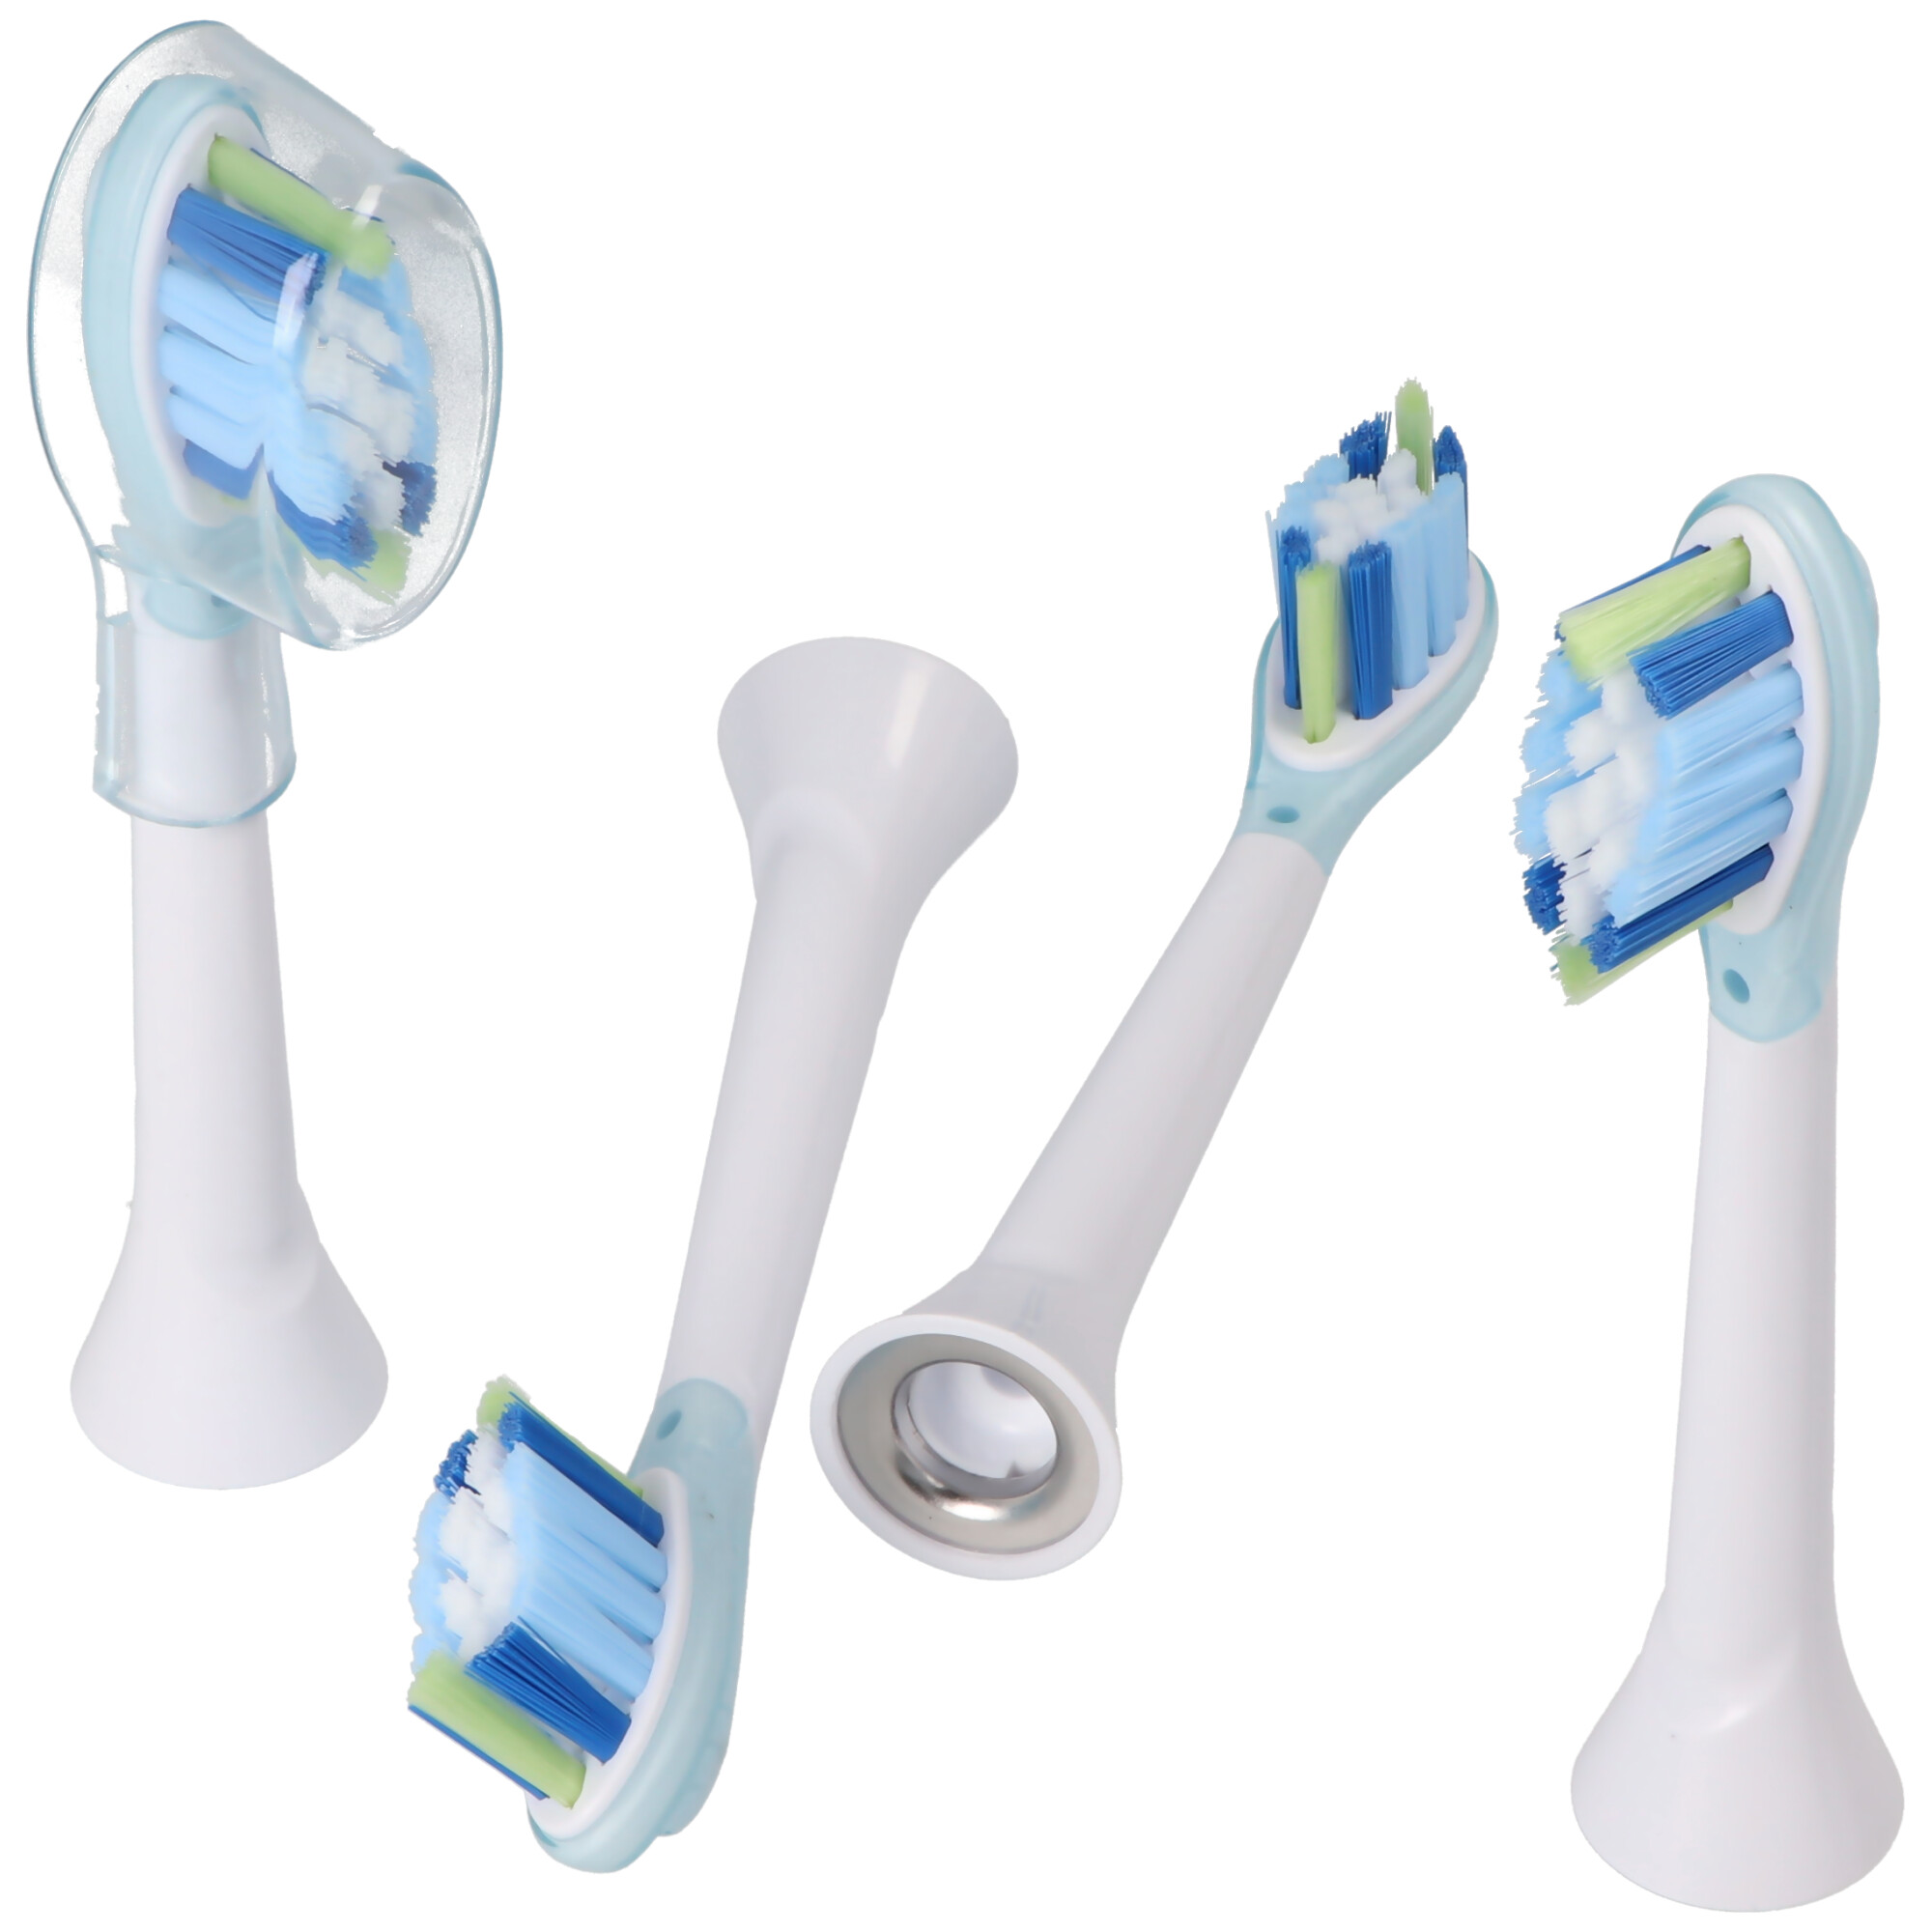 4 Stück Smart Cleaning Brush Ersatz-Zahnbürstenkopf für elektrische Zahnbürsten von Philips, passend z.B. für Philips HX3 HX6 HX8 HX9 Serie